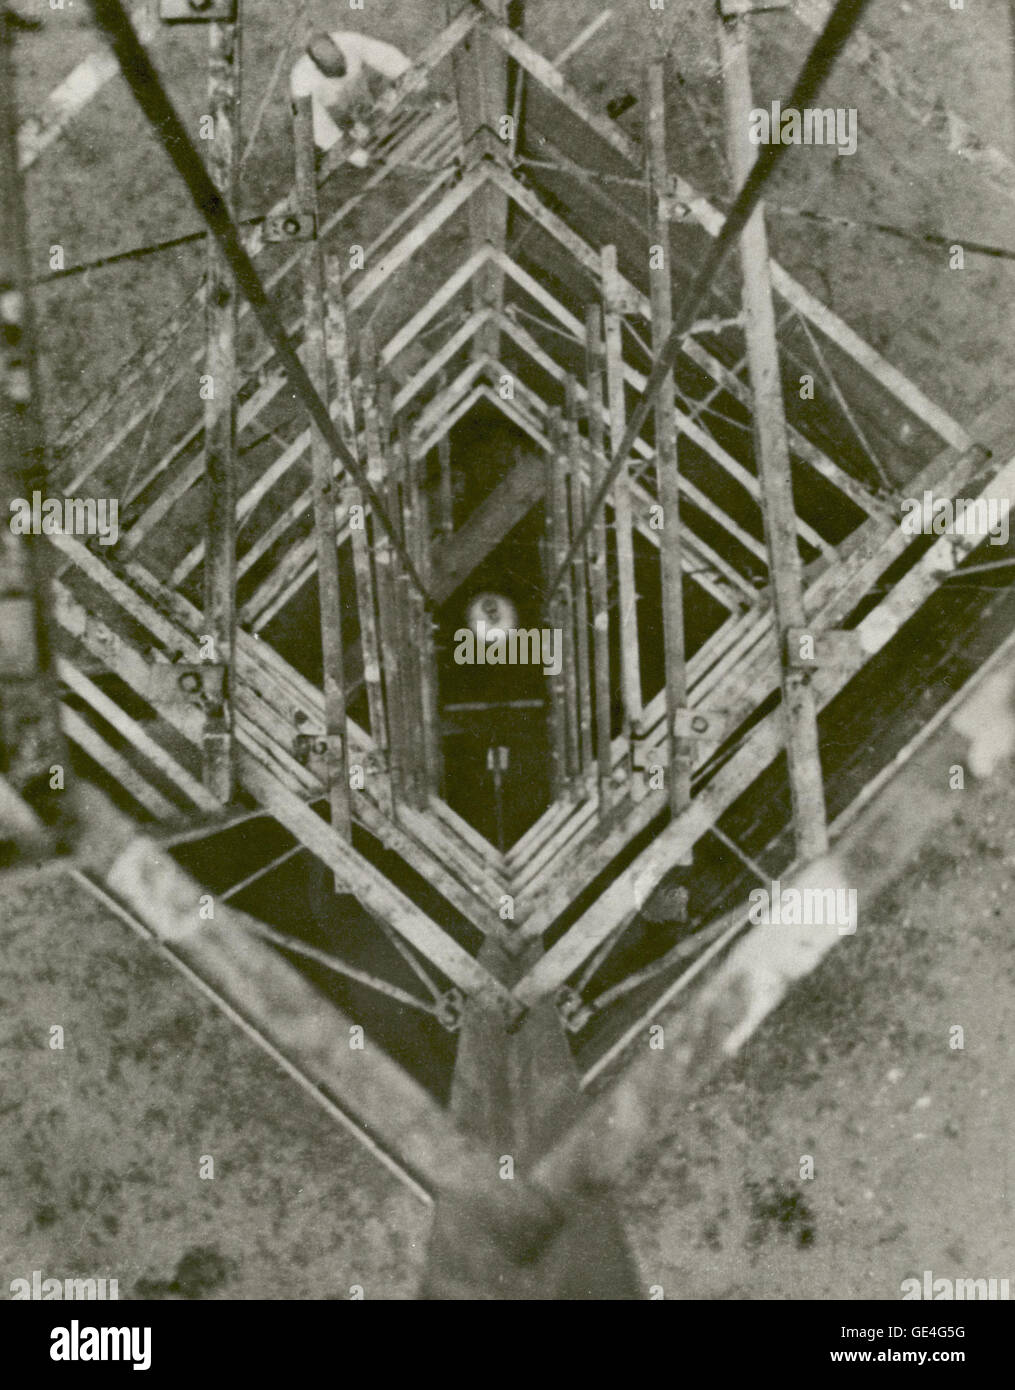 El Coronel Charles A. Lindbergh tomó esta fotografía del Dr. Robert H. Goddard rocket mirando hacia la torre de lanzamiento el 23 de septiembre de 1935, en Roswell, Nuevo México. En 1935 Goddard lanzó la serie de ensayos de cohetes fabricados con gyro- explosión controlada paleta, que estabilizó el cohete durante el vuelo. Dr. Goddard ha sido reconocido como el padre de la Americana de los cohetes y como uno de los pioneros en la exploración del espacio teórico. Su sueño era la conquista de la atmósfera superior y, en última instancia, espacio mediante el uso de cohete de propulsión. Cuando los Estados Unidos comenzaron a prepararse para la conquista o Foto de stock